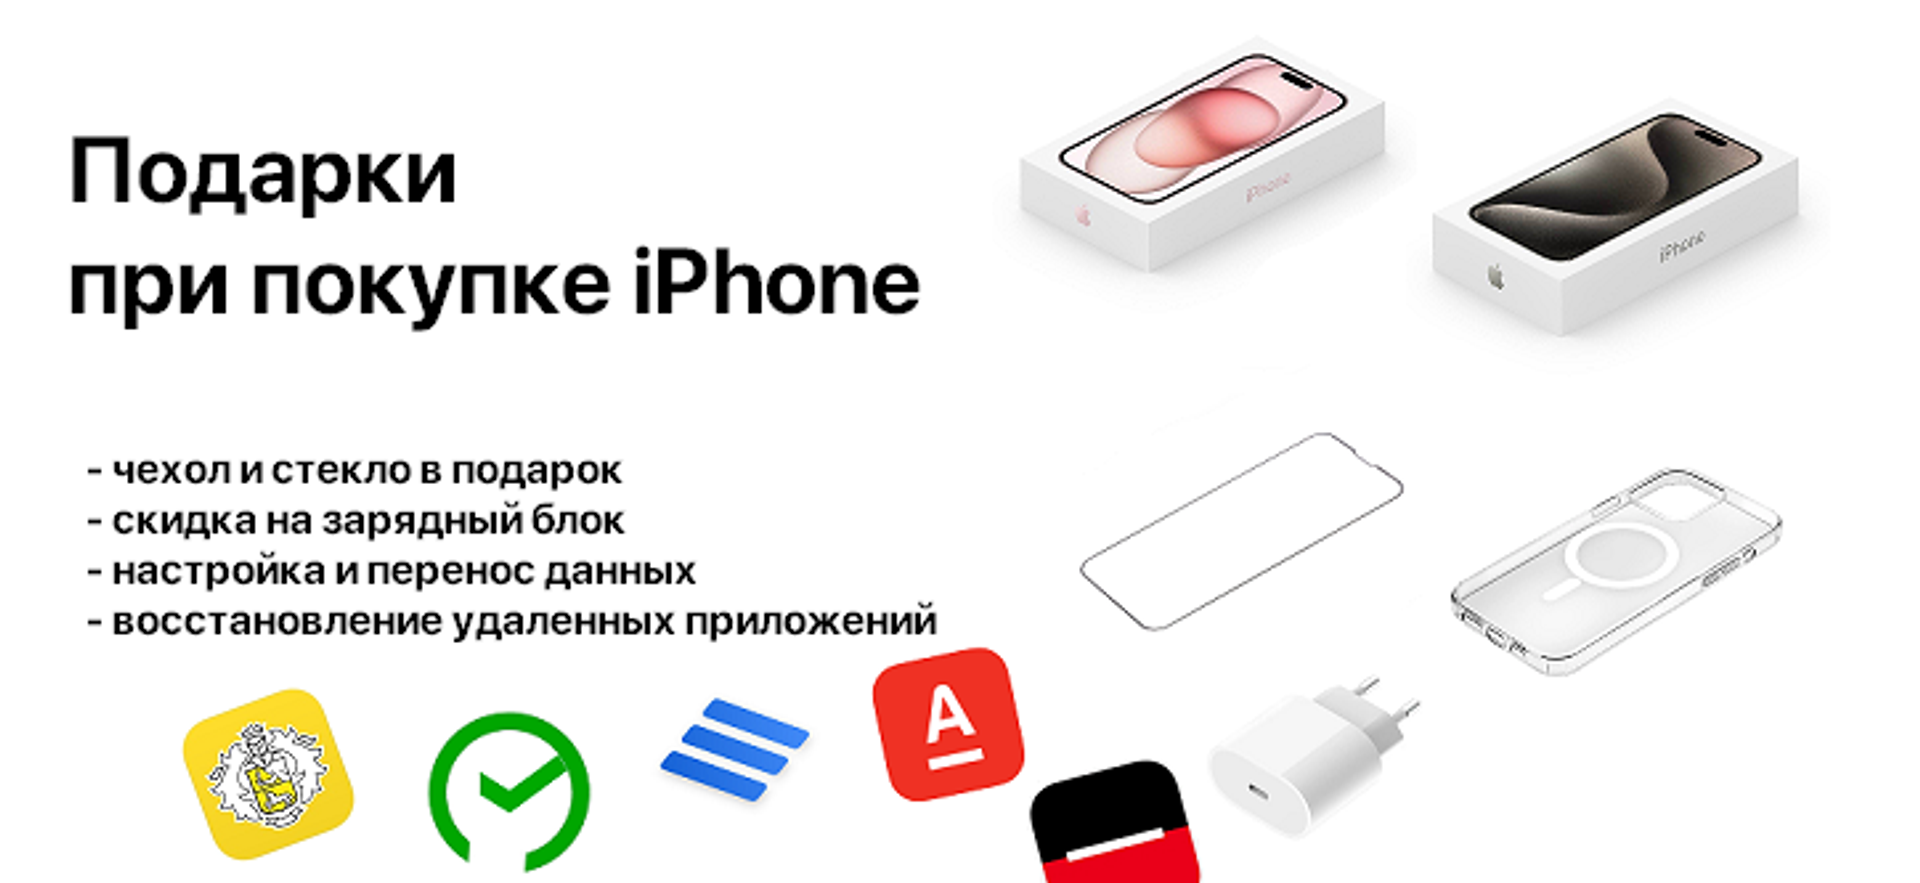 Купить Apple iPhone в Иркутске выгодно в Торгово-сервисном бутике Apple38.ru